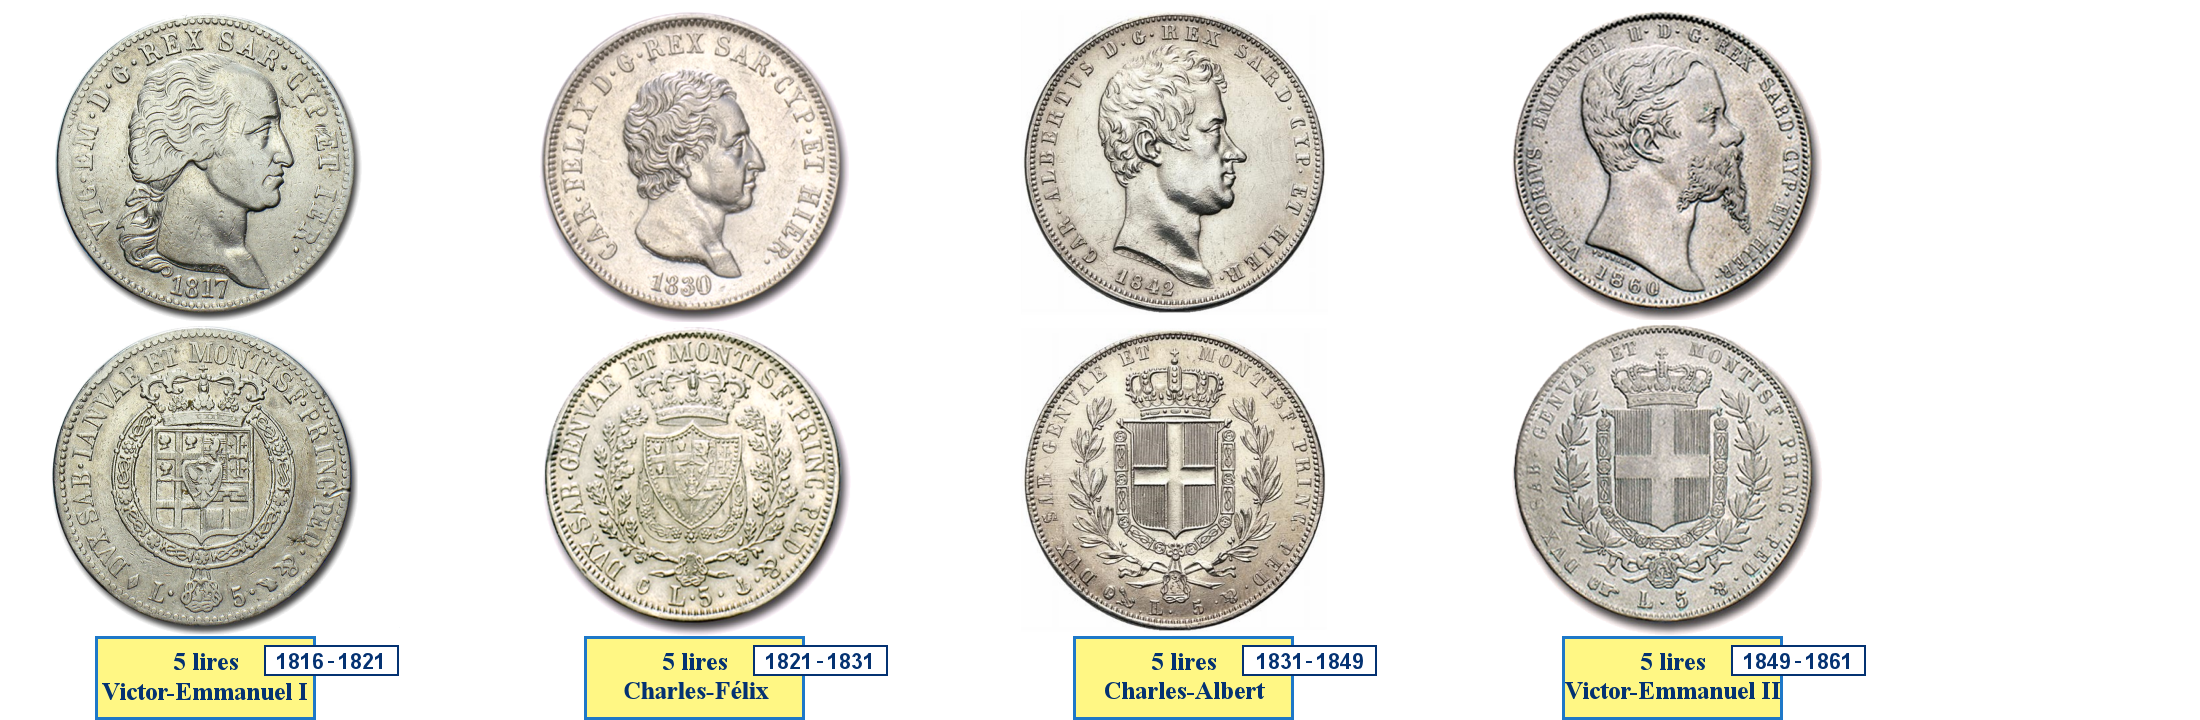 Monnaies du Royaume de Piémont-Sardaigne - Lire décimale (1816